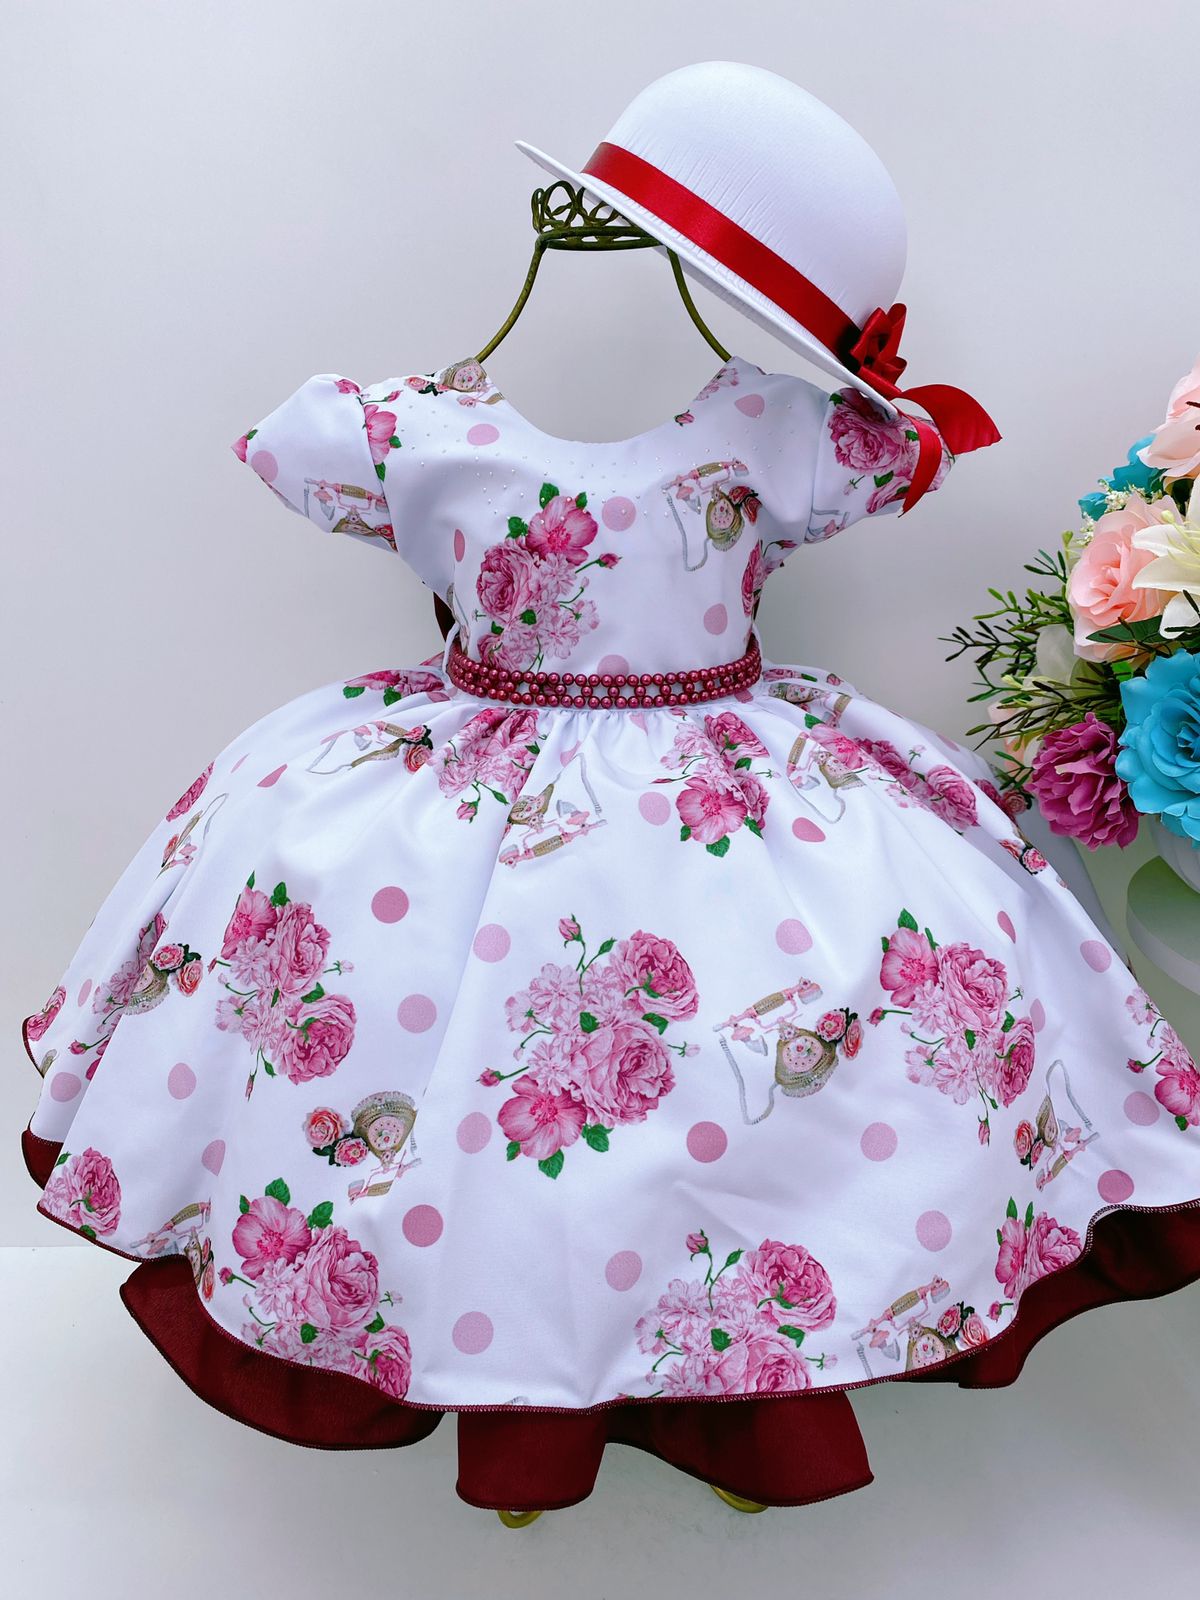 Chapéu Infantil Fofinho Carolina com Laço Floral Rosa Marfim